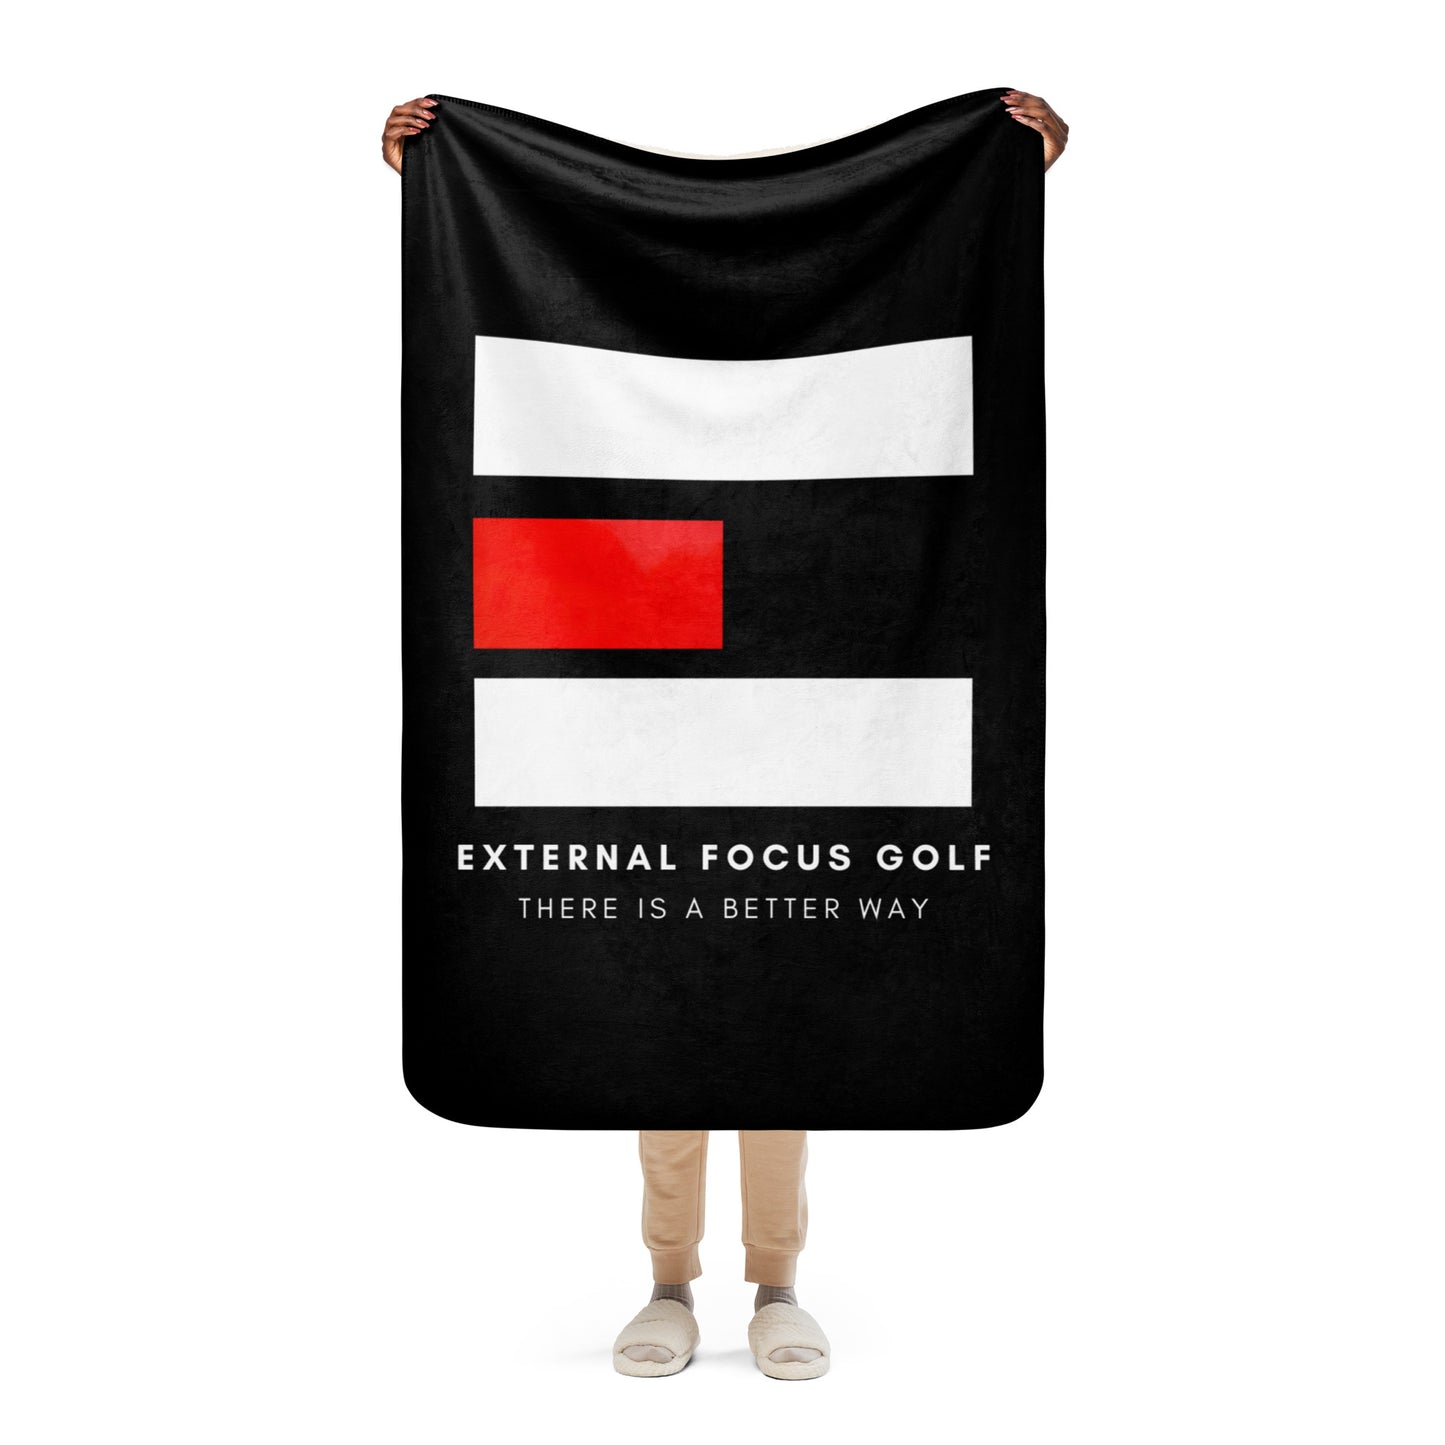 External Focus Golf Sherpa blanket